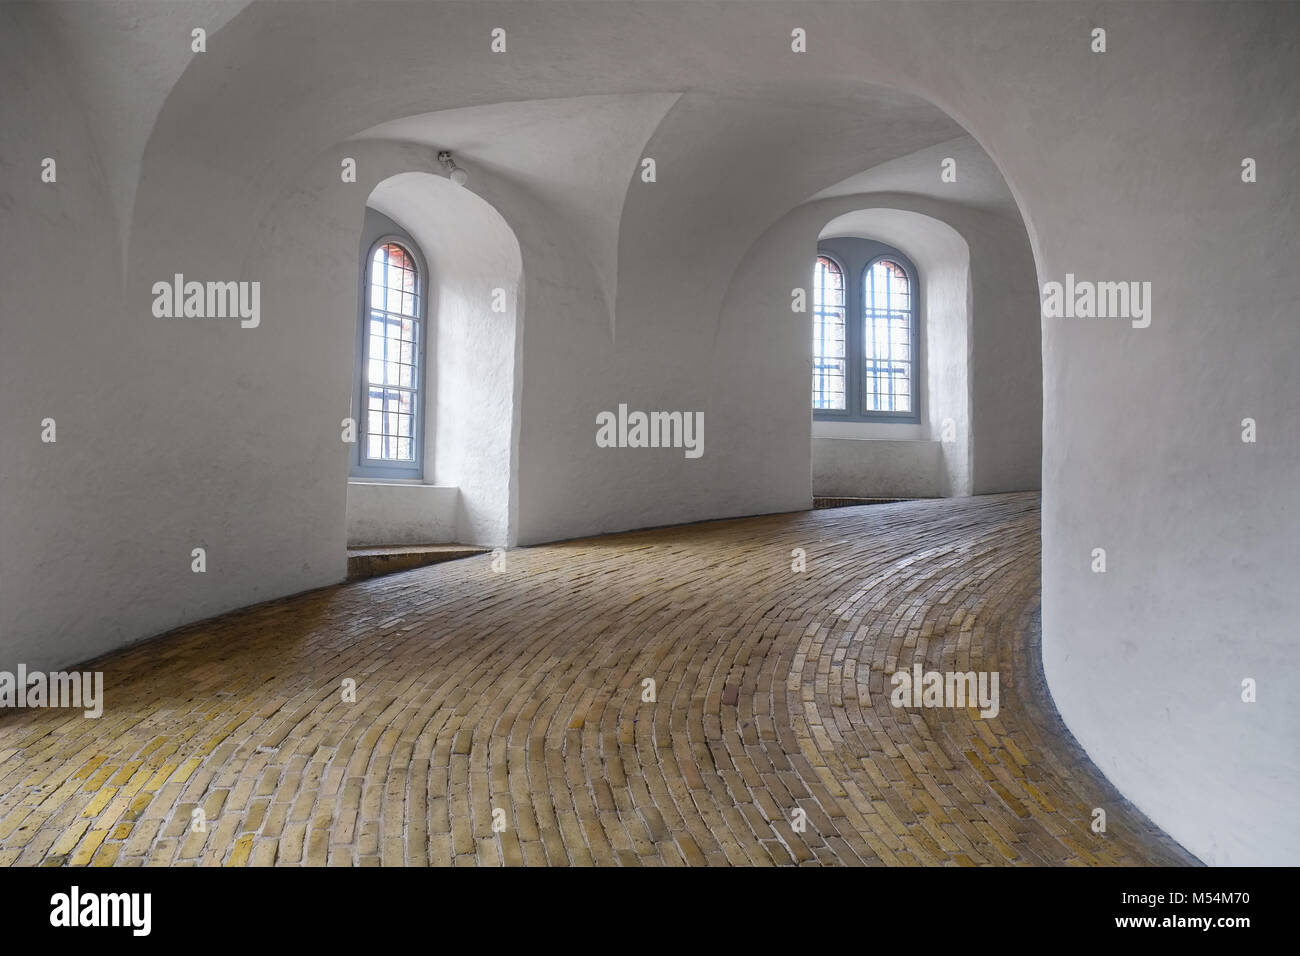 The spiral ramp in Round tower in Copenhagen. Stock Photo